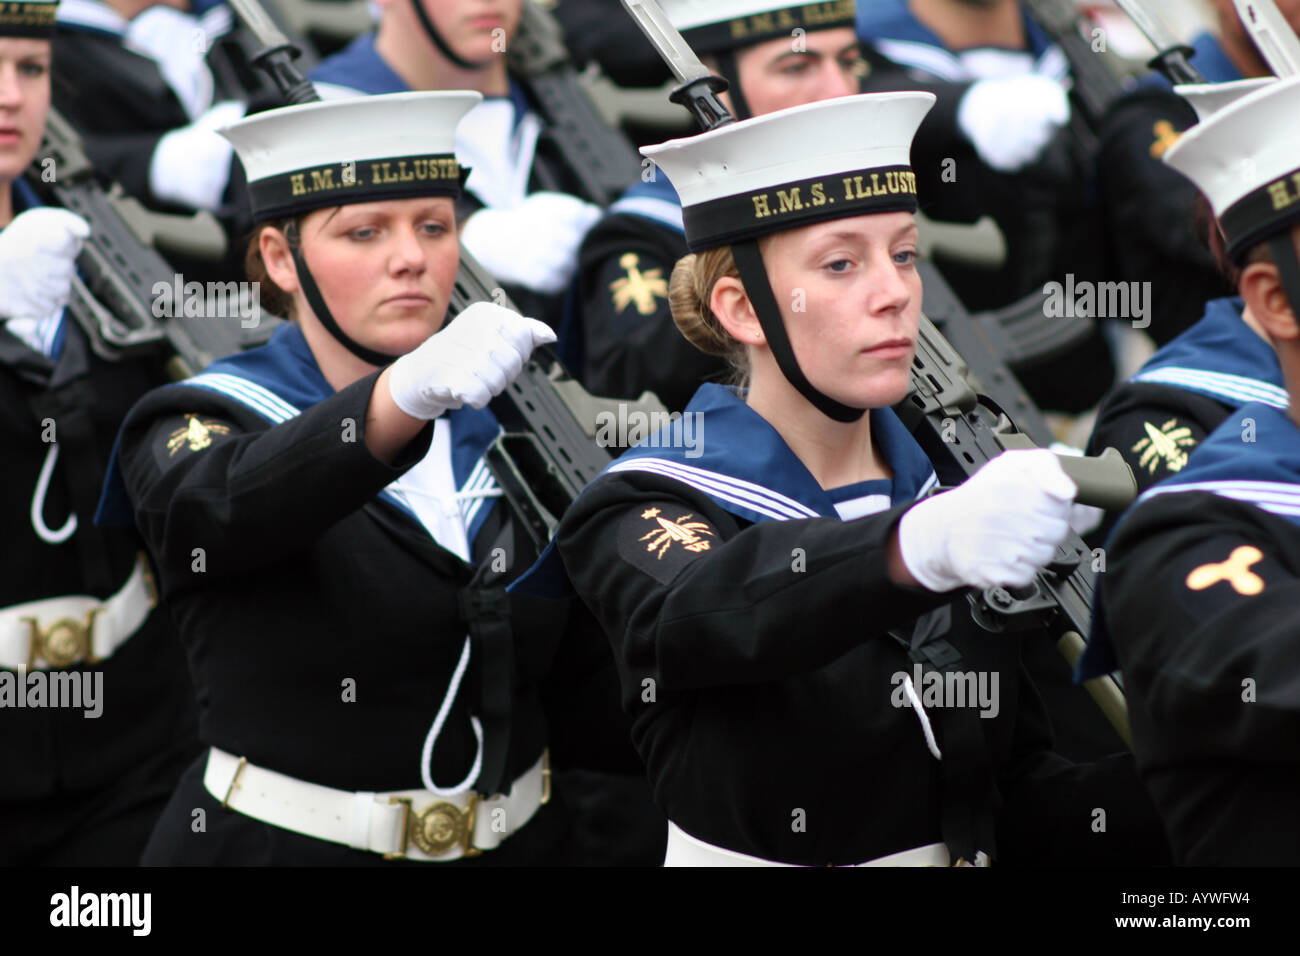 Weiblichen Matrosen der Royal Navy HMS Illustrious Streik Träger auf der Lord Bürgermeister Parade in London UK Stockfoto